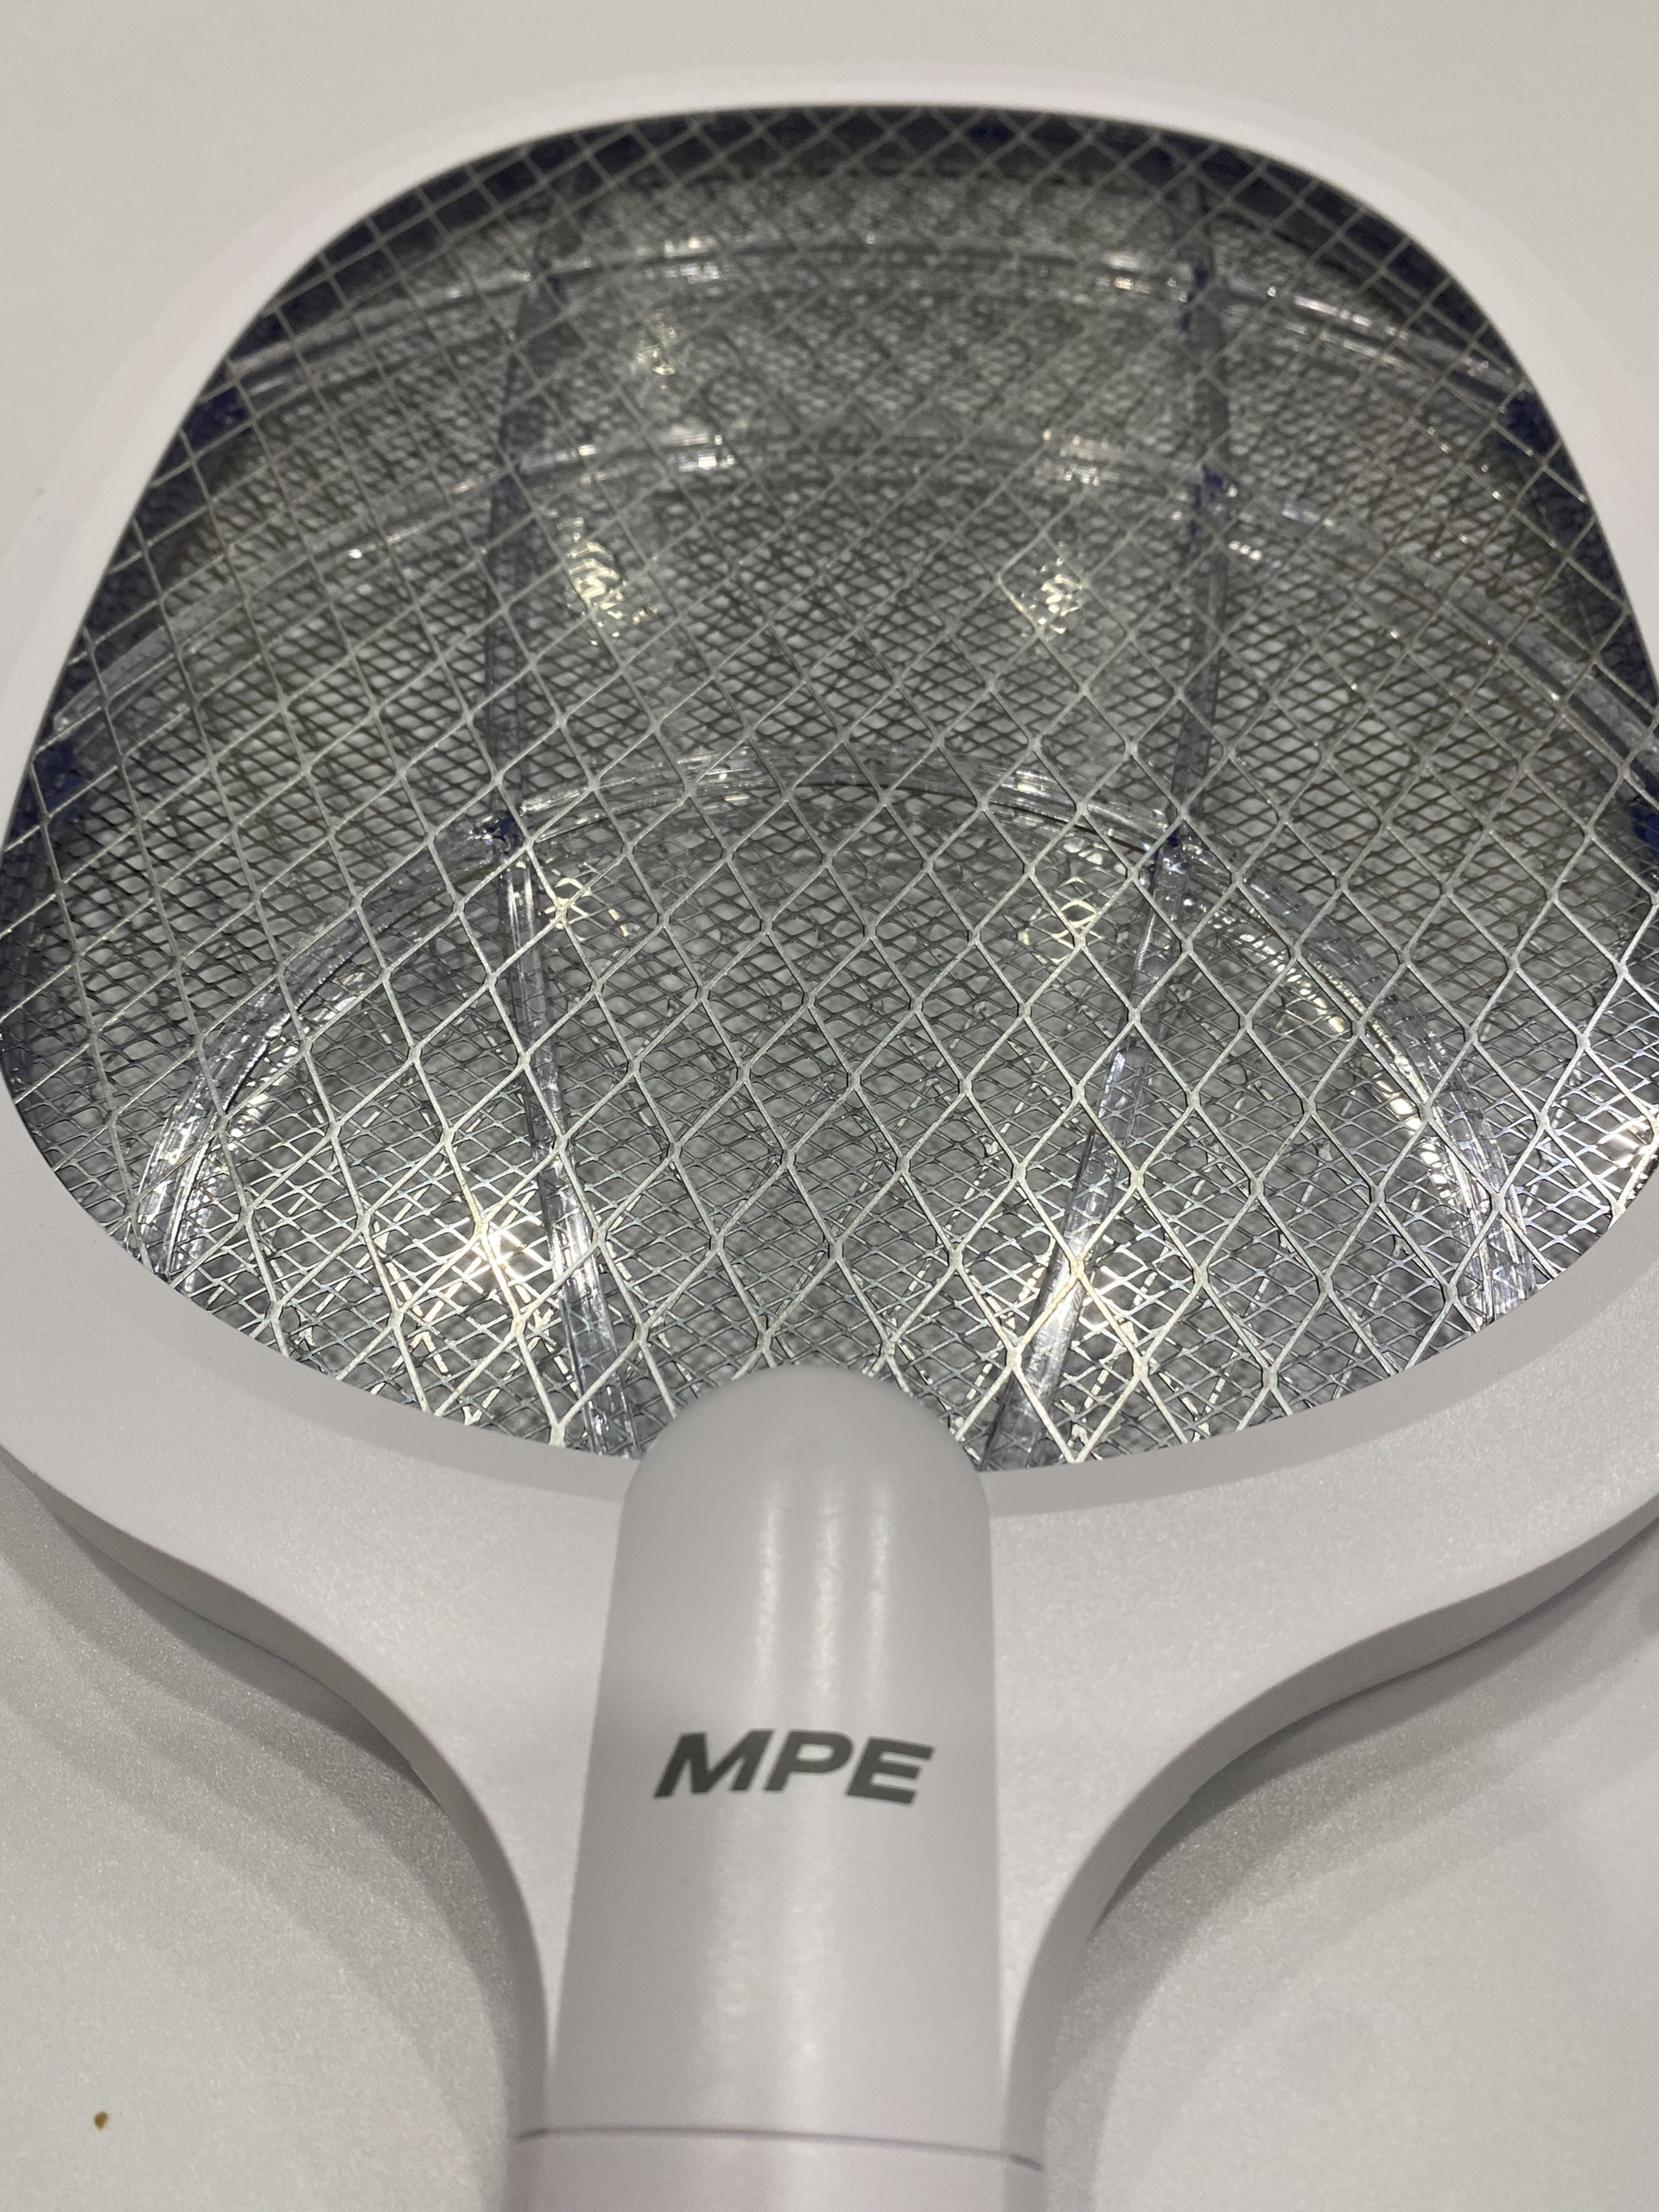 Vợt muỗi MPE VM1 thông minh 2 in 1 tích hợp chức năng tự động bắt muỗi, cổng sạc USB, có đèn led báo - Hàng chính hãng